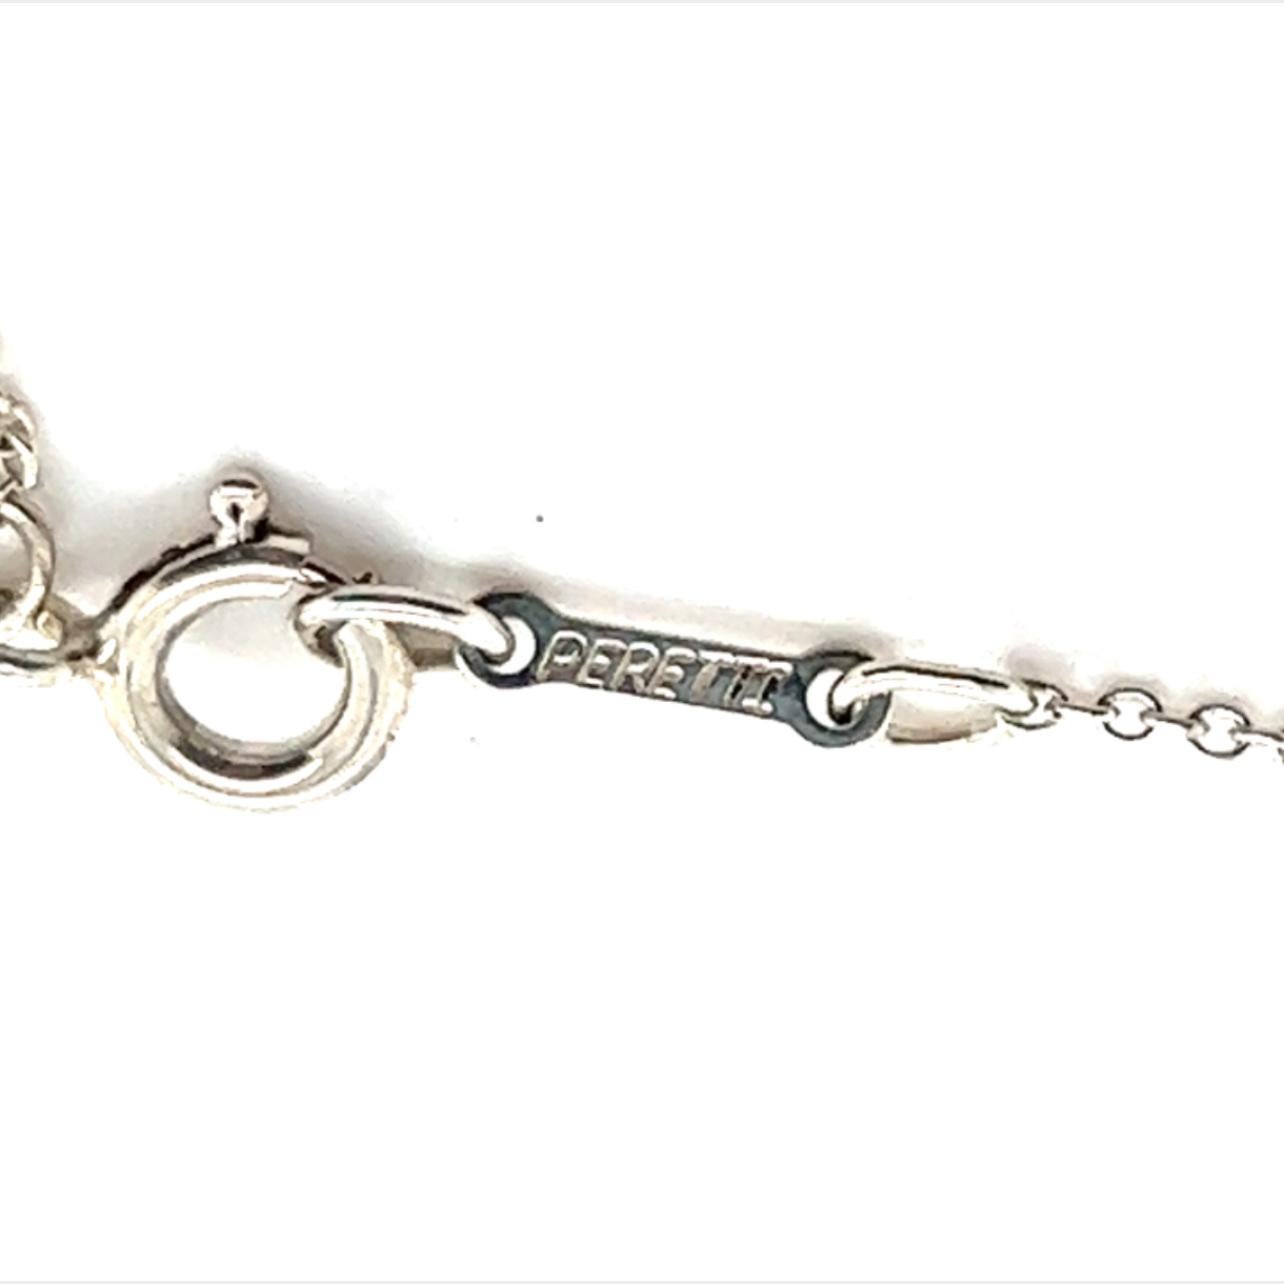 Tiffany & Co Estate Heart Pendant Silver Necklace 17